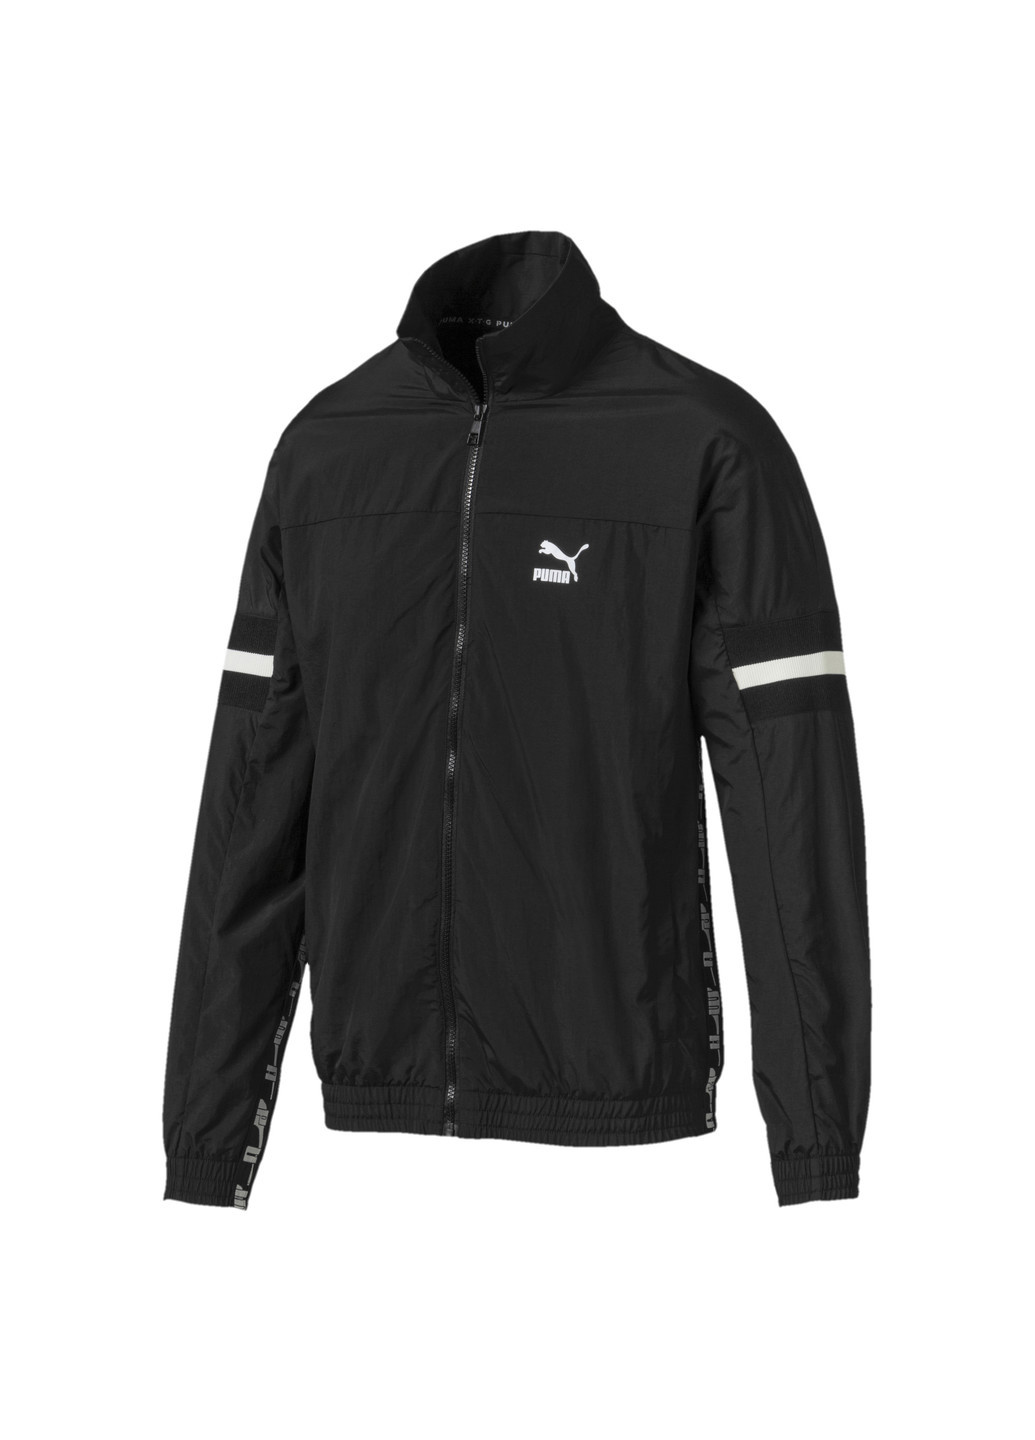 Олімпійка Puma XTG Woven Jacket чорна спортивна